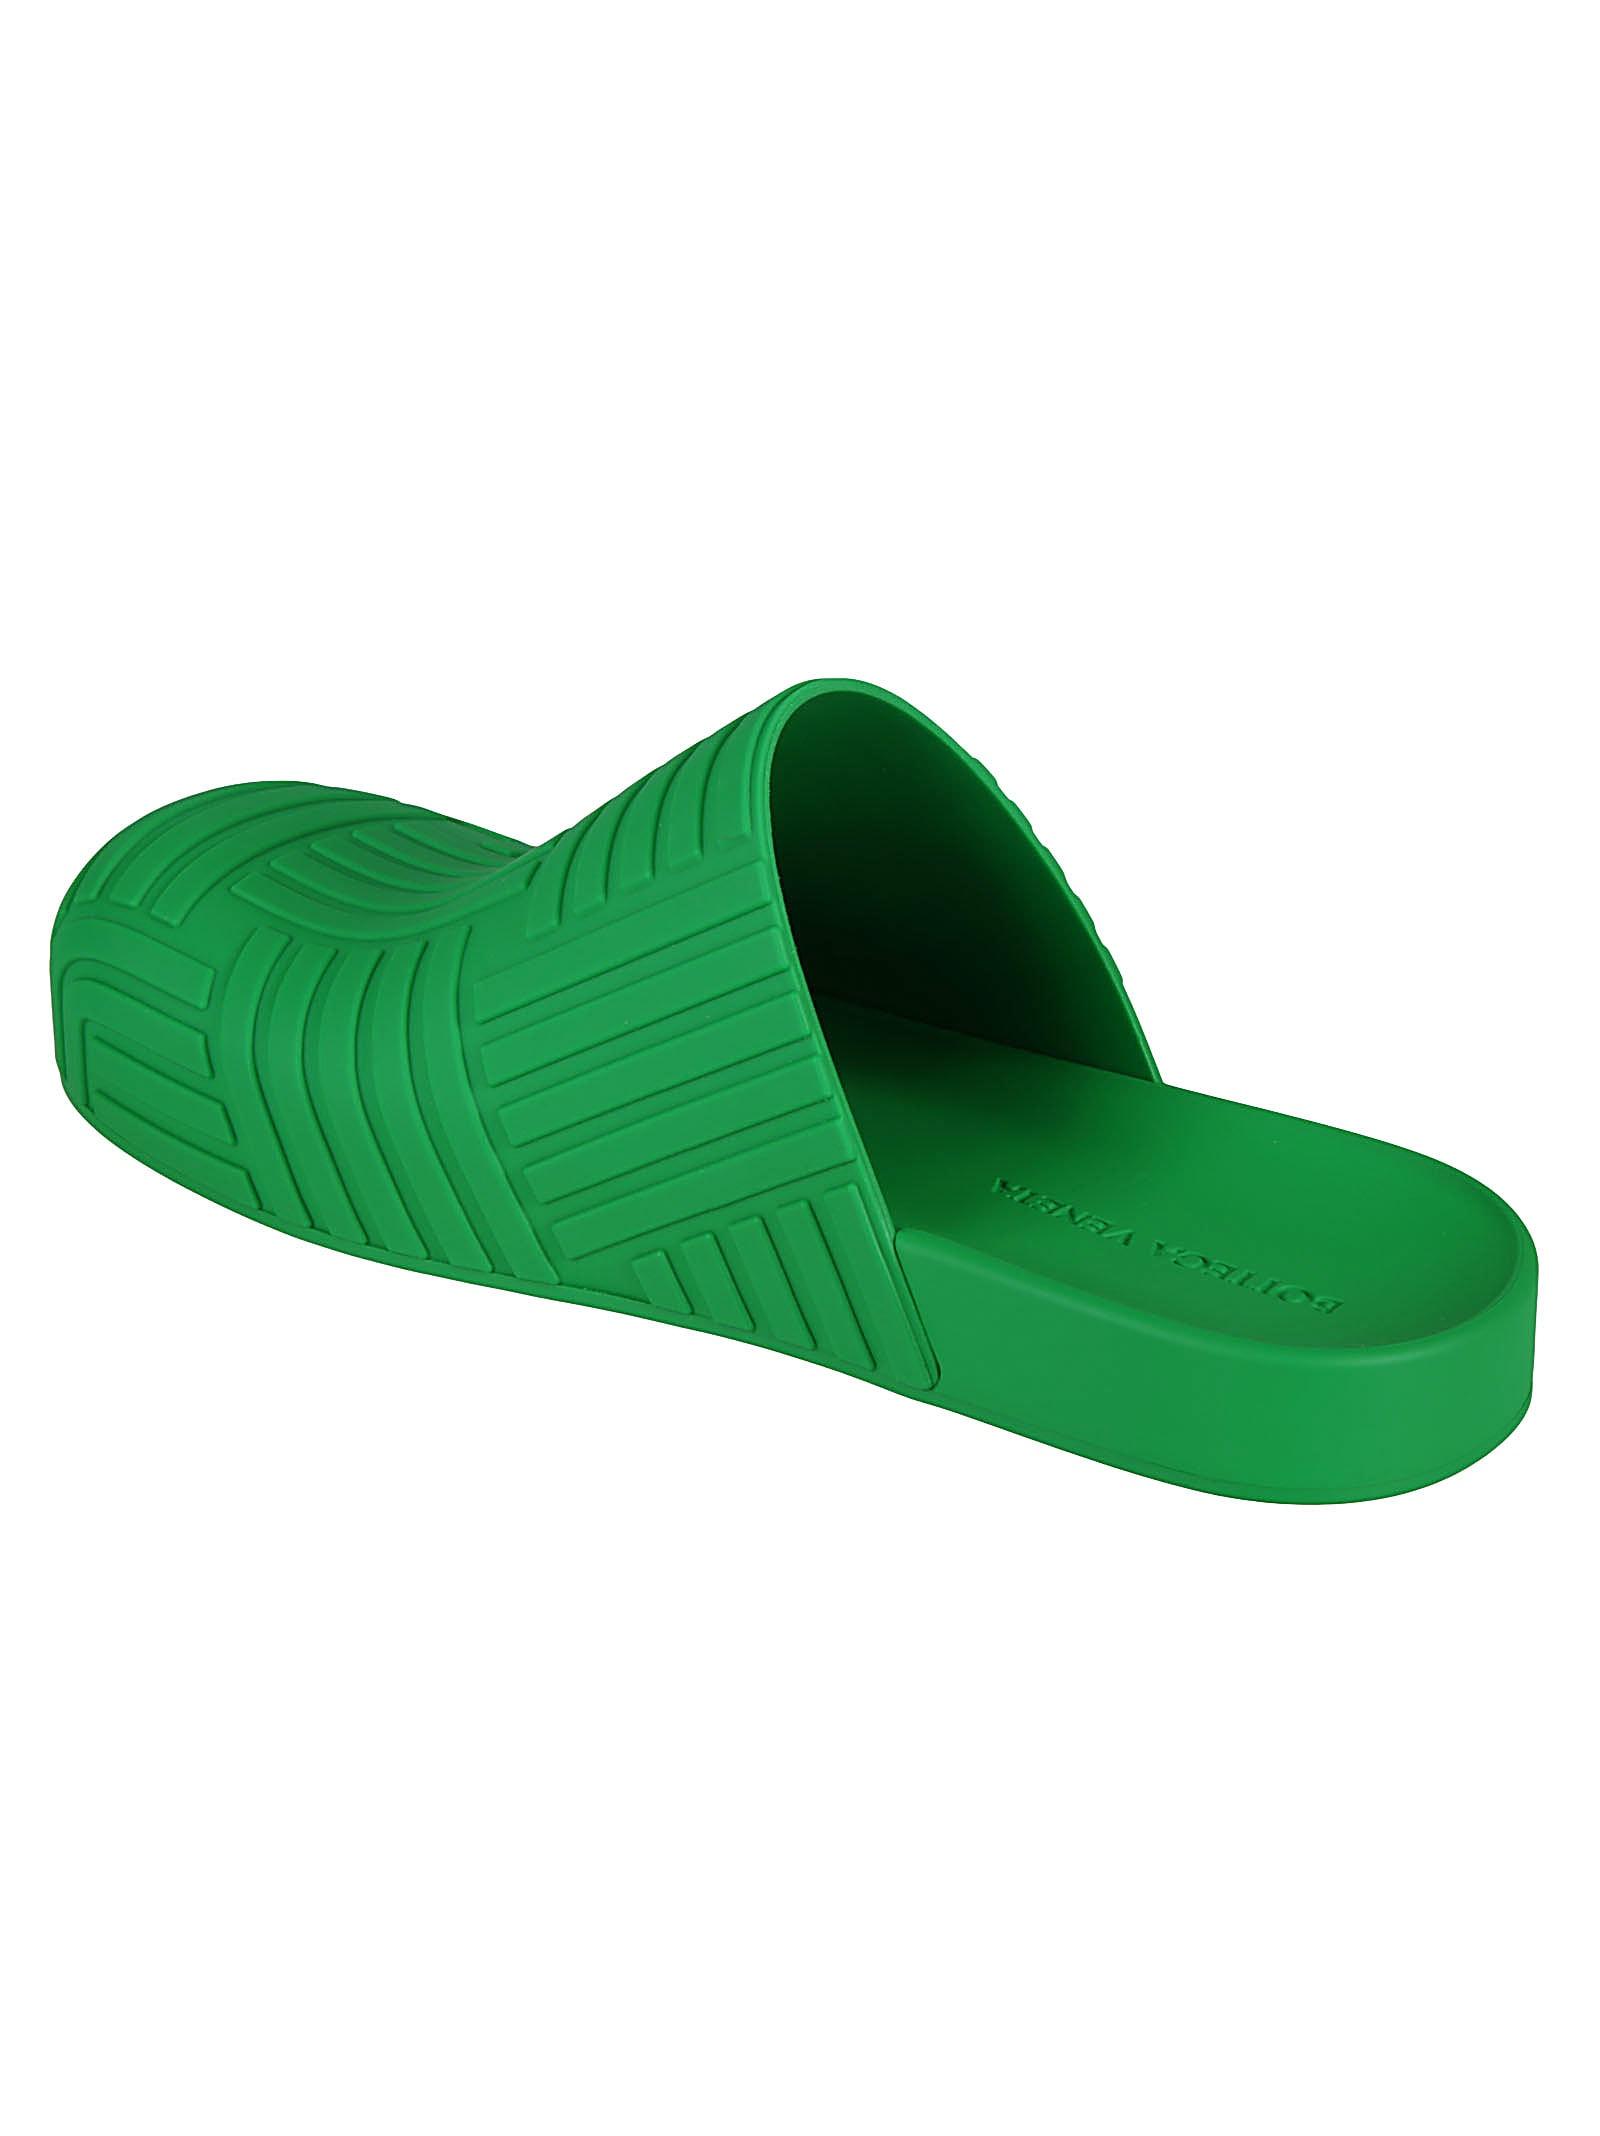 slides and flip flops Leather sandals Save 55% Bottega Veneta Slider Sandals in Green for Men Mens Shoes Sandals 